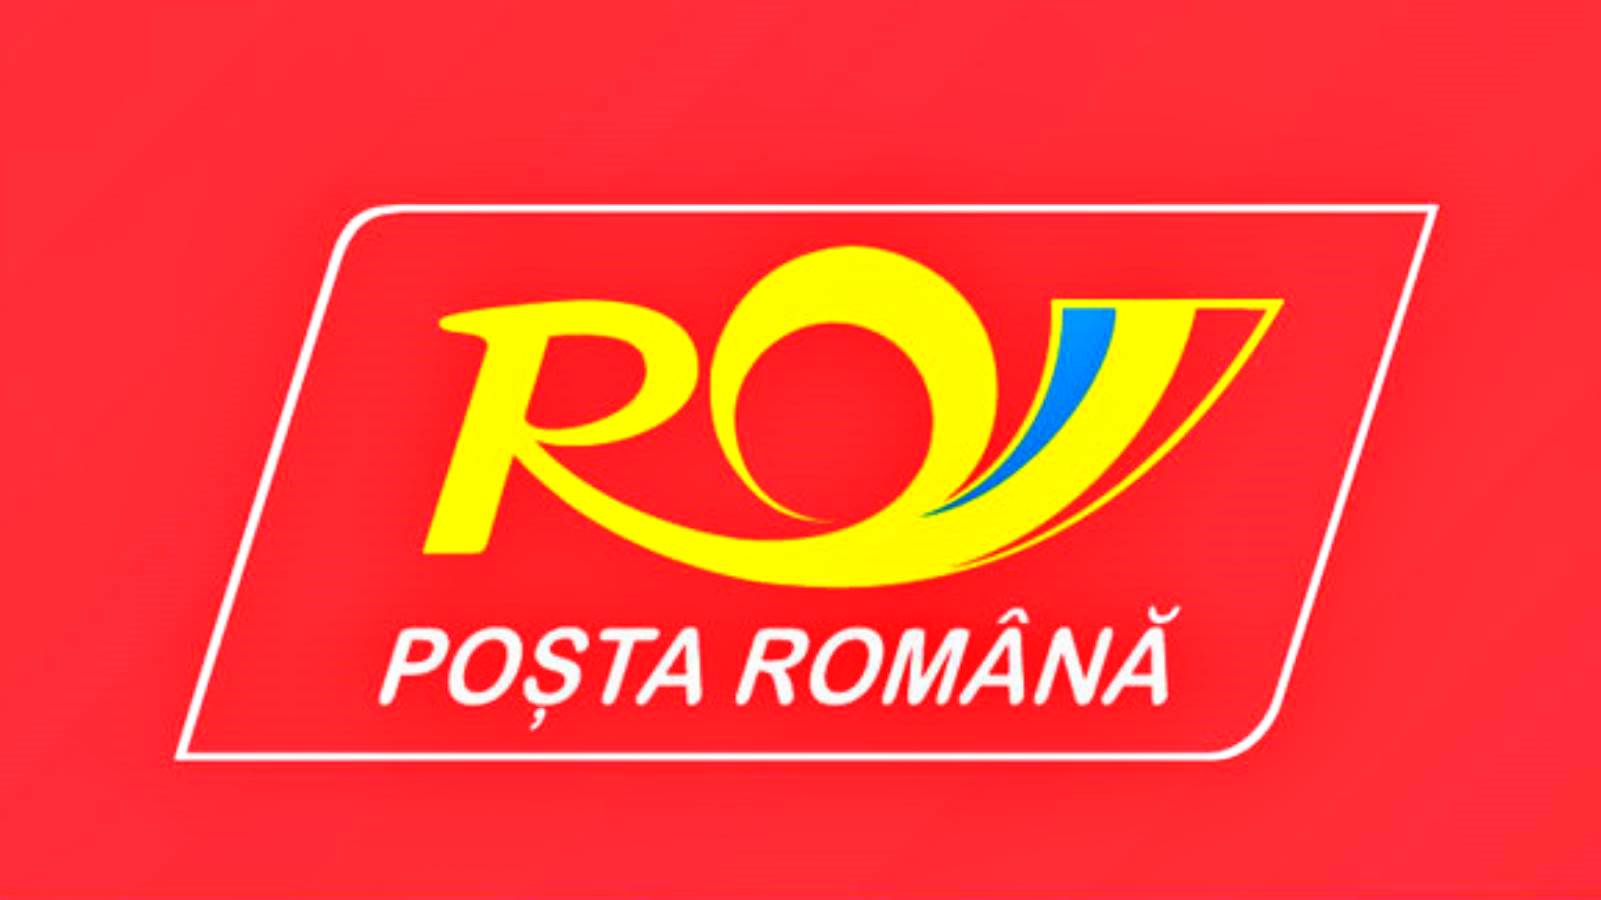 Romanian Postin ilmoittamat toimet romanialaisille kaikkialla maassa